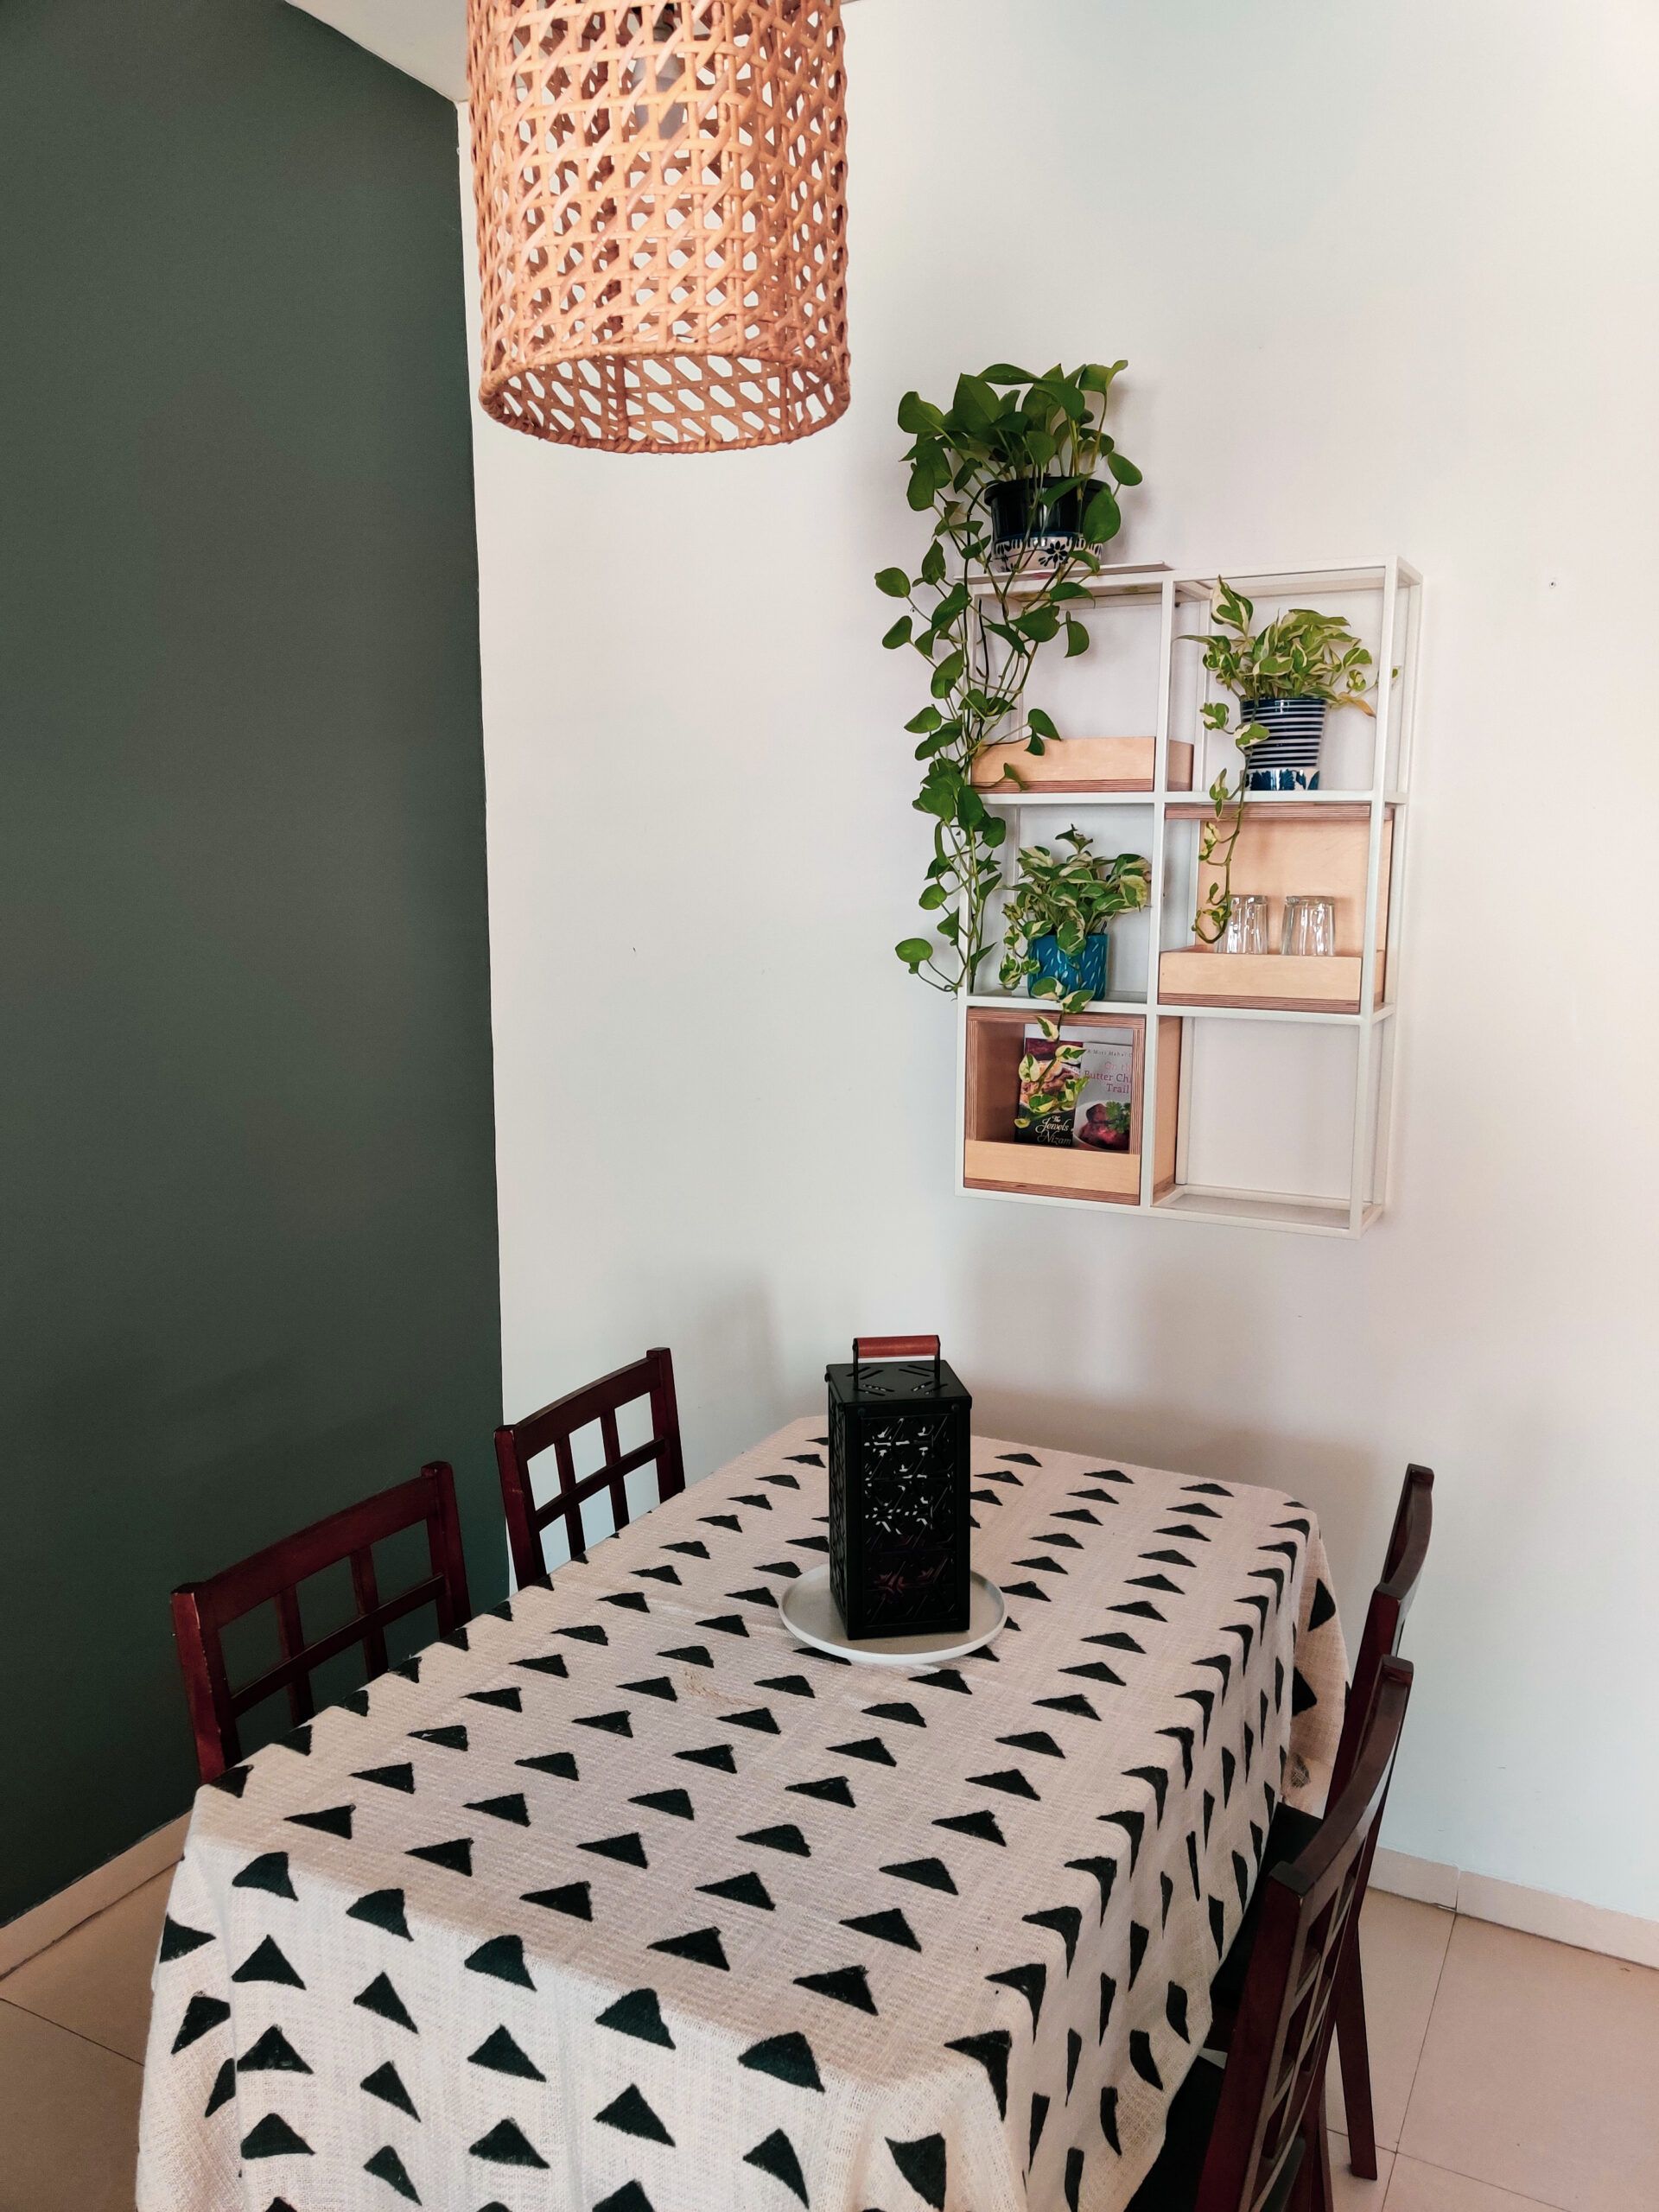 diy home decor crafts-wall shelves-planters